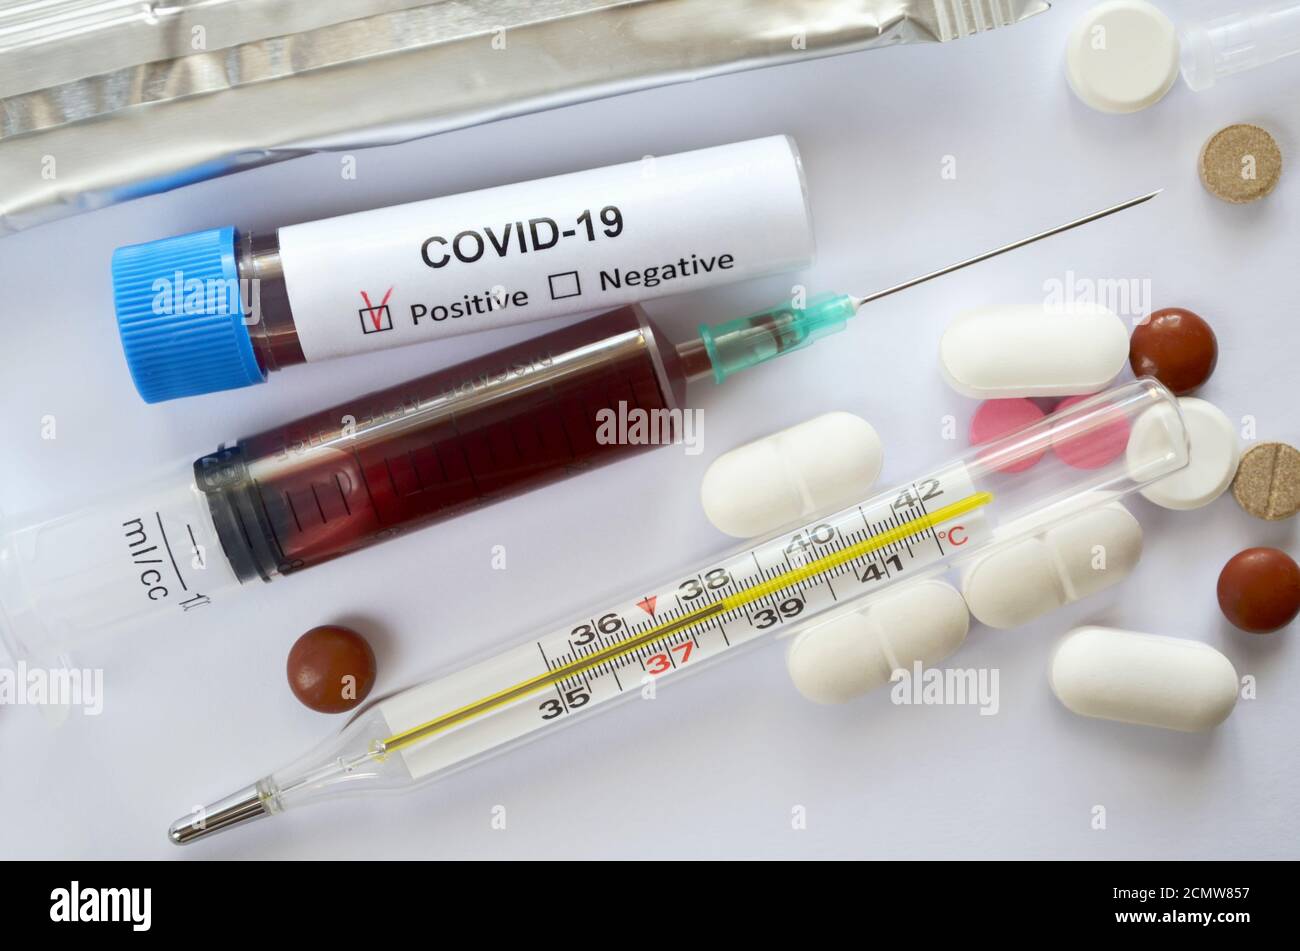 Muestras de sangre en una jeringa desechable y un tubo de ensayo con un resultado positivo para el COVID-19, un termómetro médico de vidrio de mercurio y varias tabletas Foto de stock